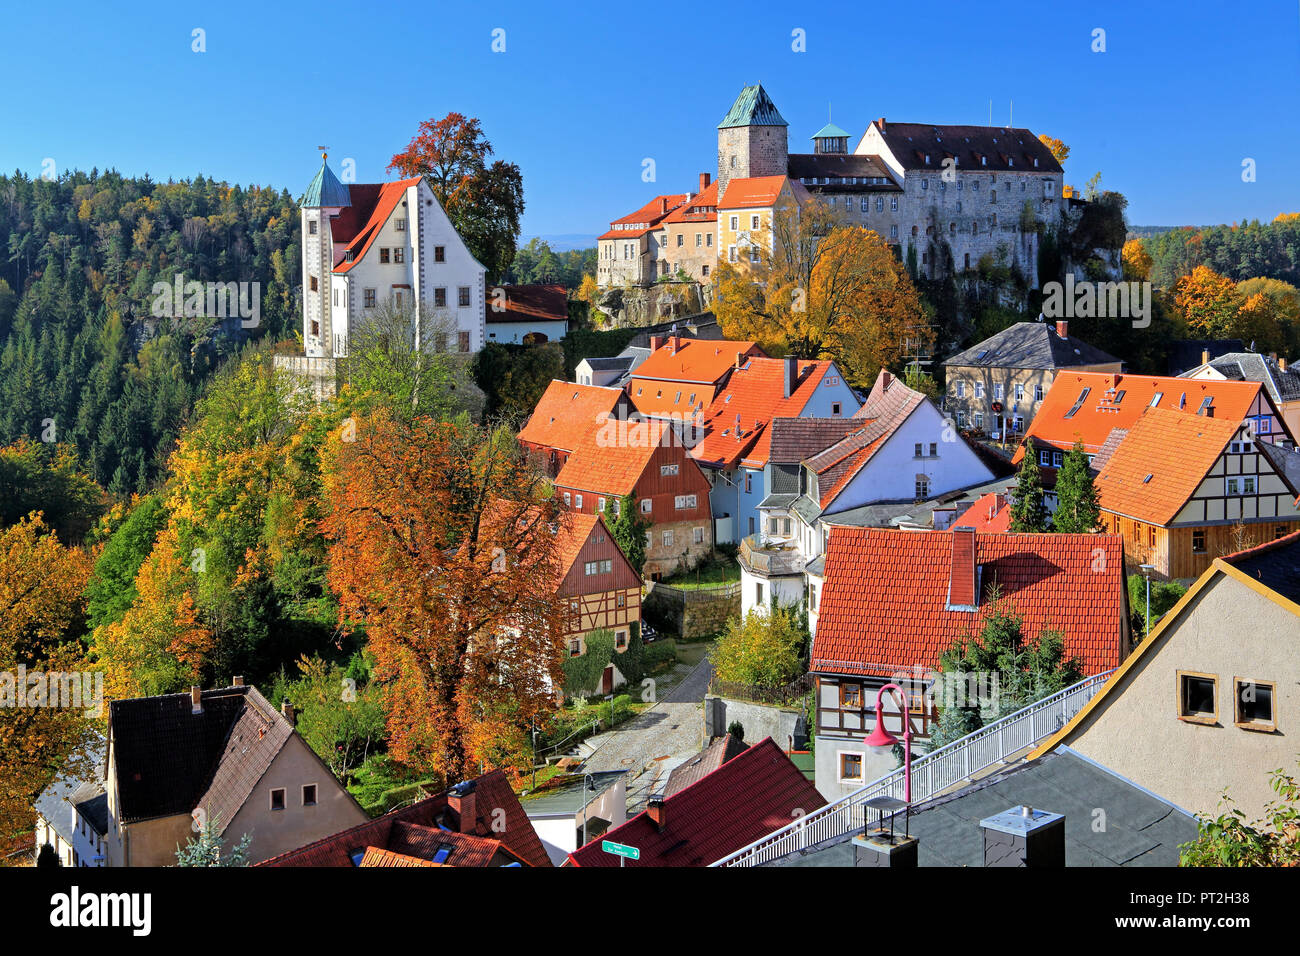 Centre-ville historique avec le château, Hohnstein, des montagnes de grès de l'Elbe, la Suisse Saxonne, Saxe, Allemagne Banque D'Images